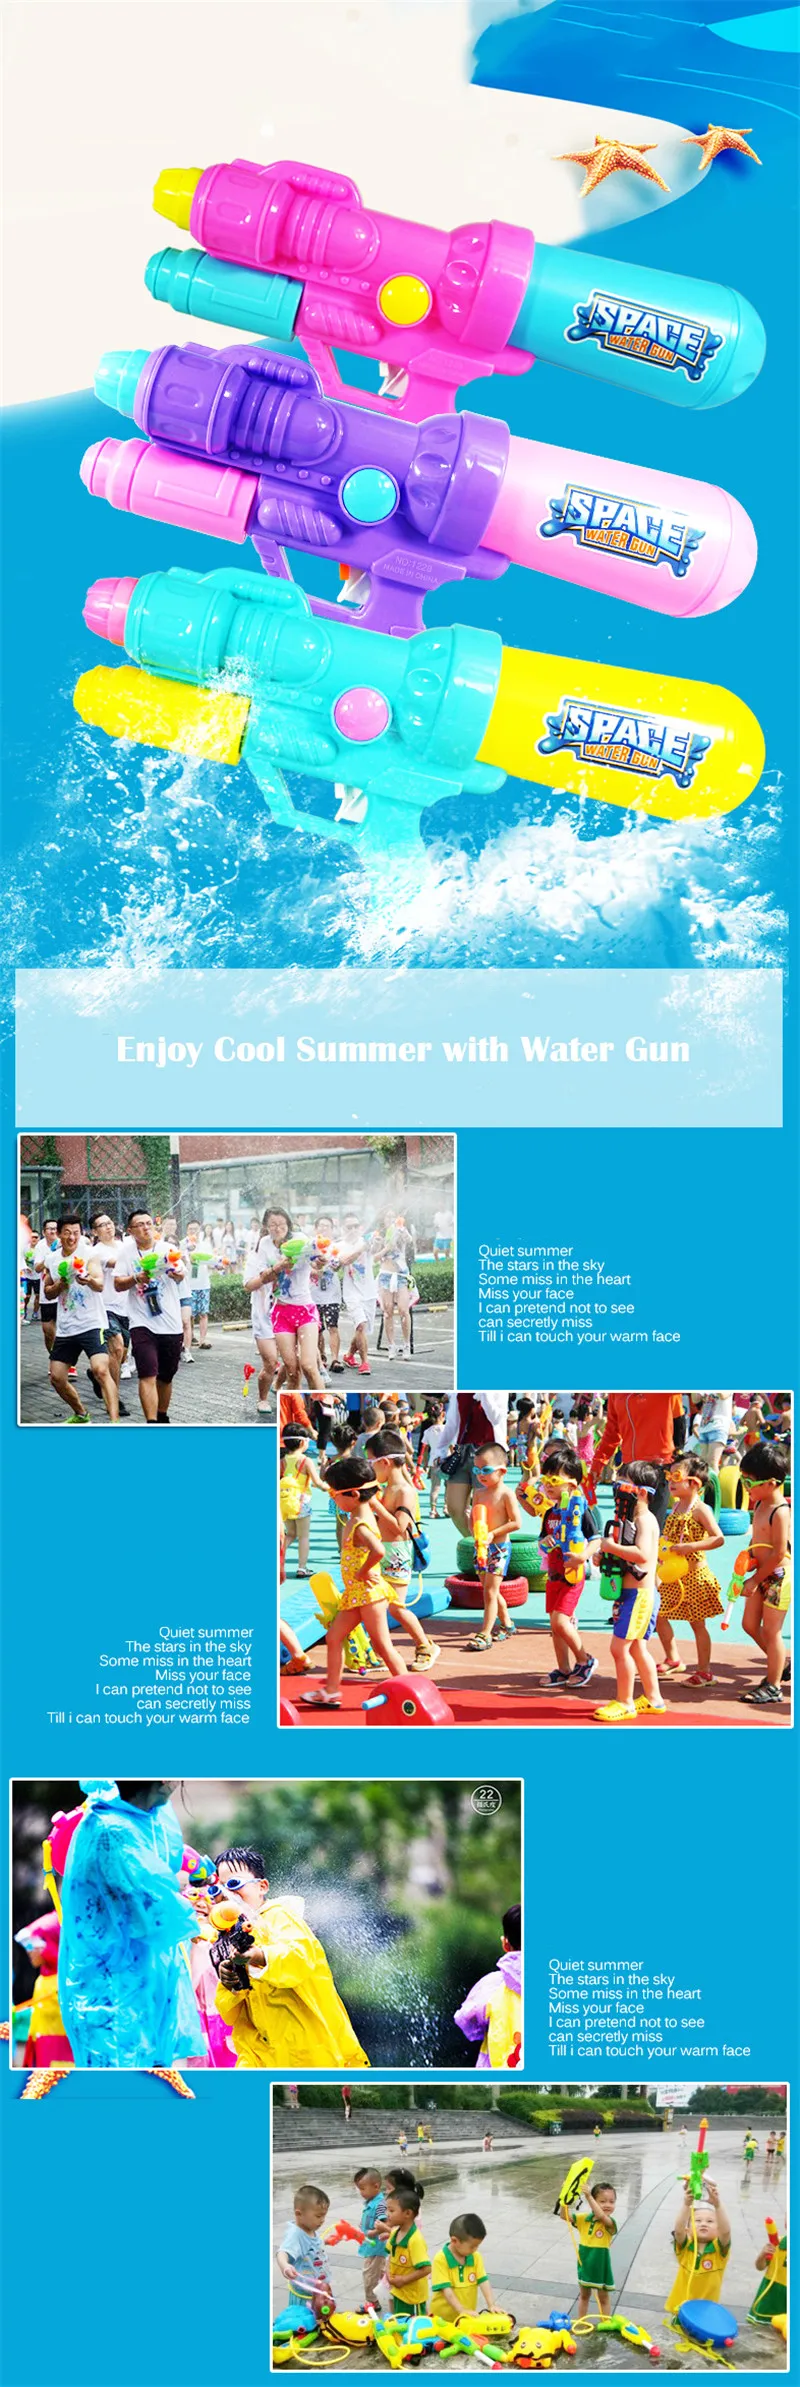 Водяной Пистолет Бластер водяная игрушка большой объем для воды Насосные пневматические для лета пляжные вечерние игрушки для детей на открытом воздухе